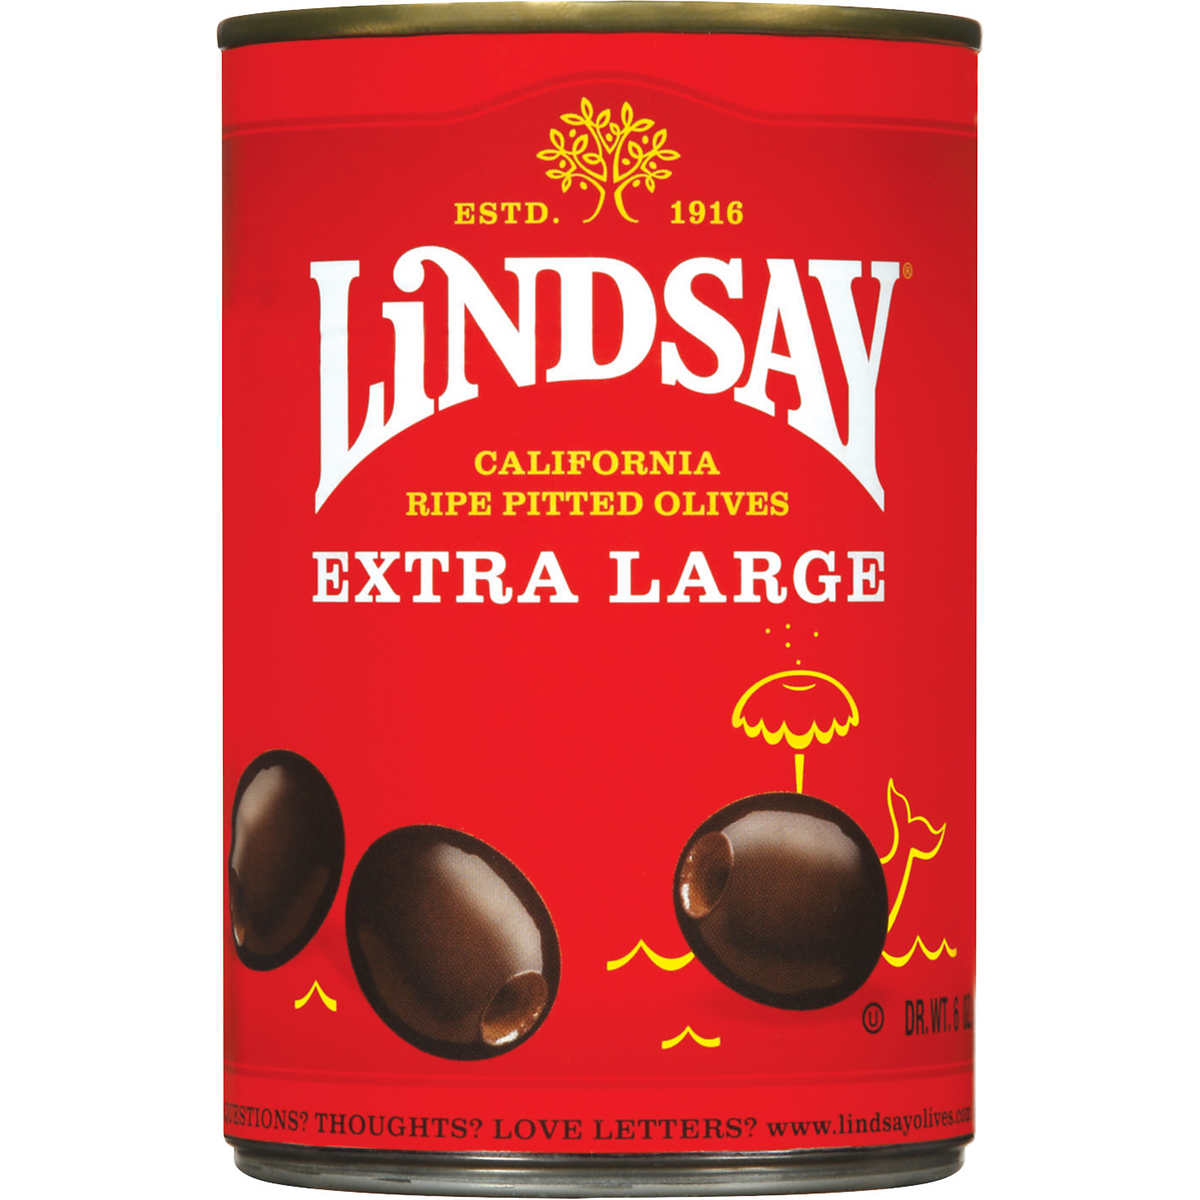 Lindsay Extra Large Black Olives 6oz